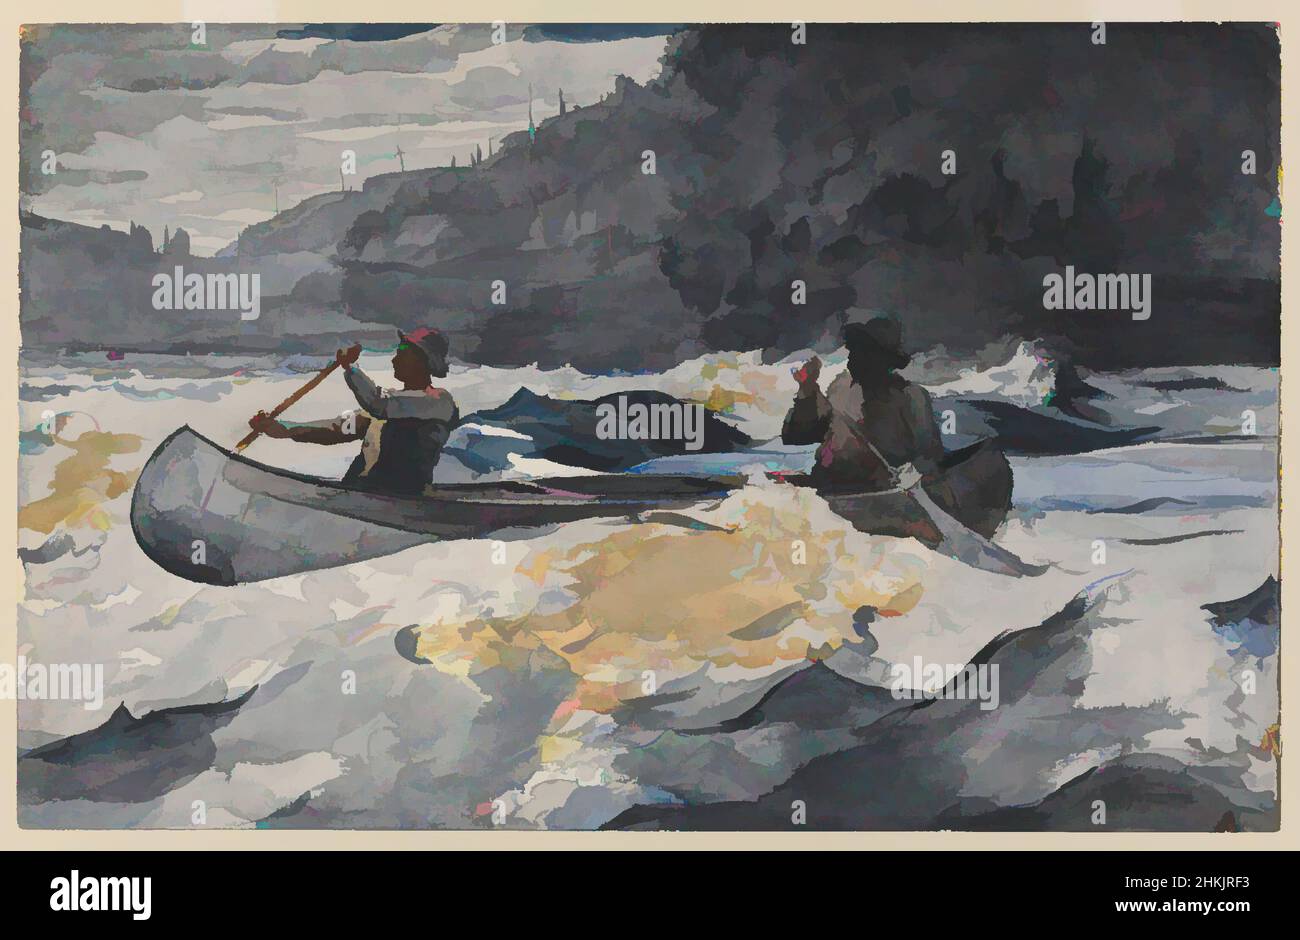 Arte ispirata da Shooting the Rapids, Winslow Homer, americano, 1836-1910, acquerello su grafite off-bianco, spessa, moderatamente testurizzata carta con filigrana, 1902, 13 15/16 x 21 13/16 in., 35,4 x 55,4 cm, barca, canoa, ndd8, OAR, All'aperto, paddle, ricreazione, sport, opere classiche modernizzate da Artotop con un tuffo di modernità. Forme, colore e valore, impatto visivo accattivante sulle emozioni artistiche attraverso la libertà delle opere d'arte in modo contemporaneo. Un messaggio senza tempo che persegue una nuova direzione selvaggiamente creativa. Artisti che si rivolgono al supporto digitale e creano l'NFT Artotop Foto Stock